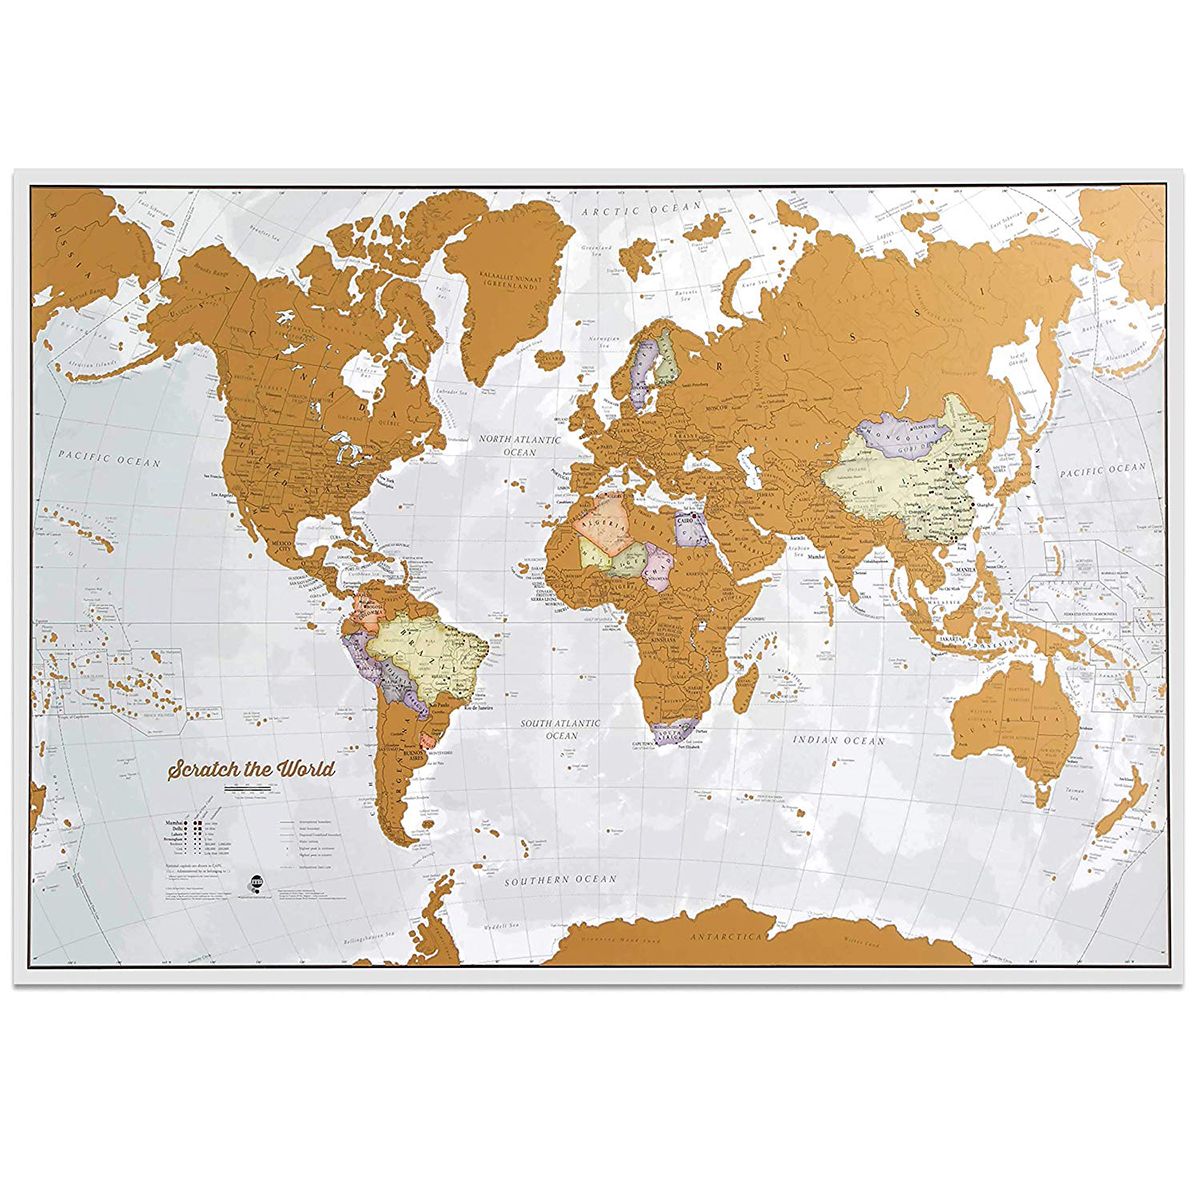 რუკები საერთაშორისო გადასაფხეკი მსოფლიო მოგზაურობის რუკა